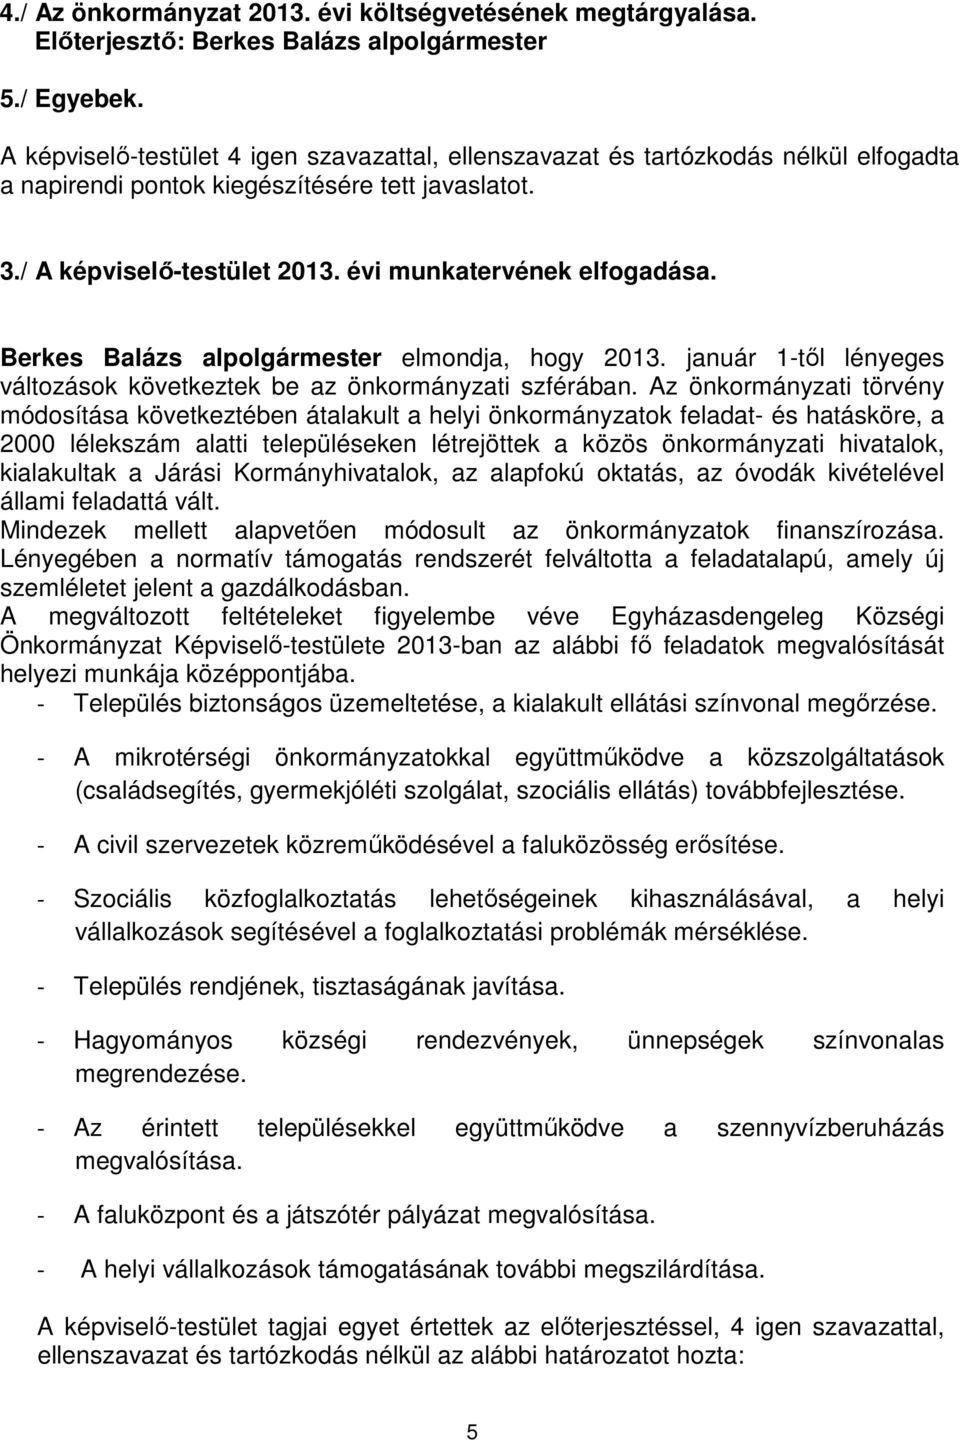 Berkes Balázs alpolgármester elmondja, hogy 2013. január 1-től lényeges változások következtek be az önkormányzati szférában.